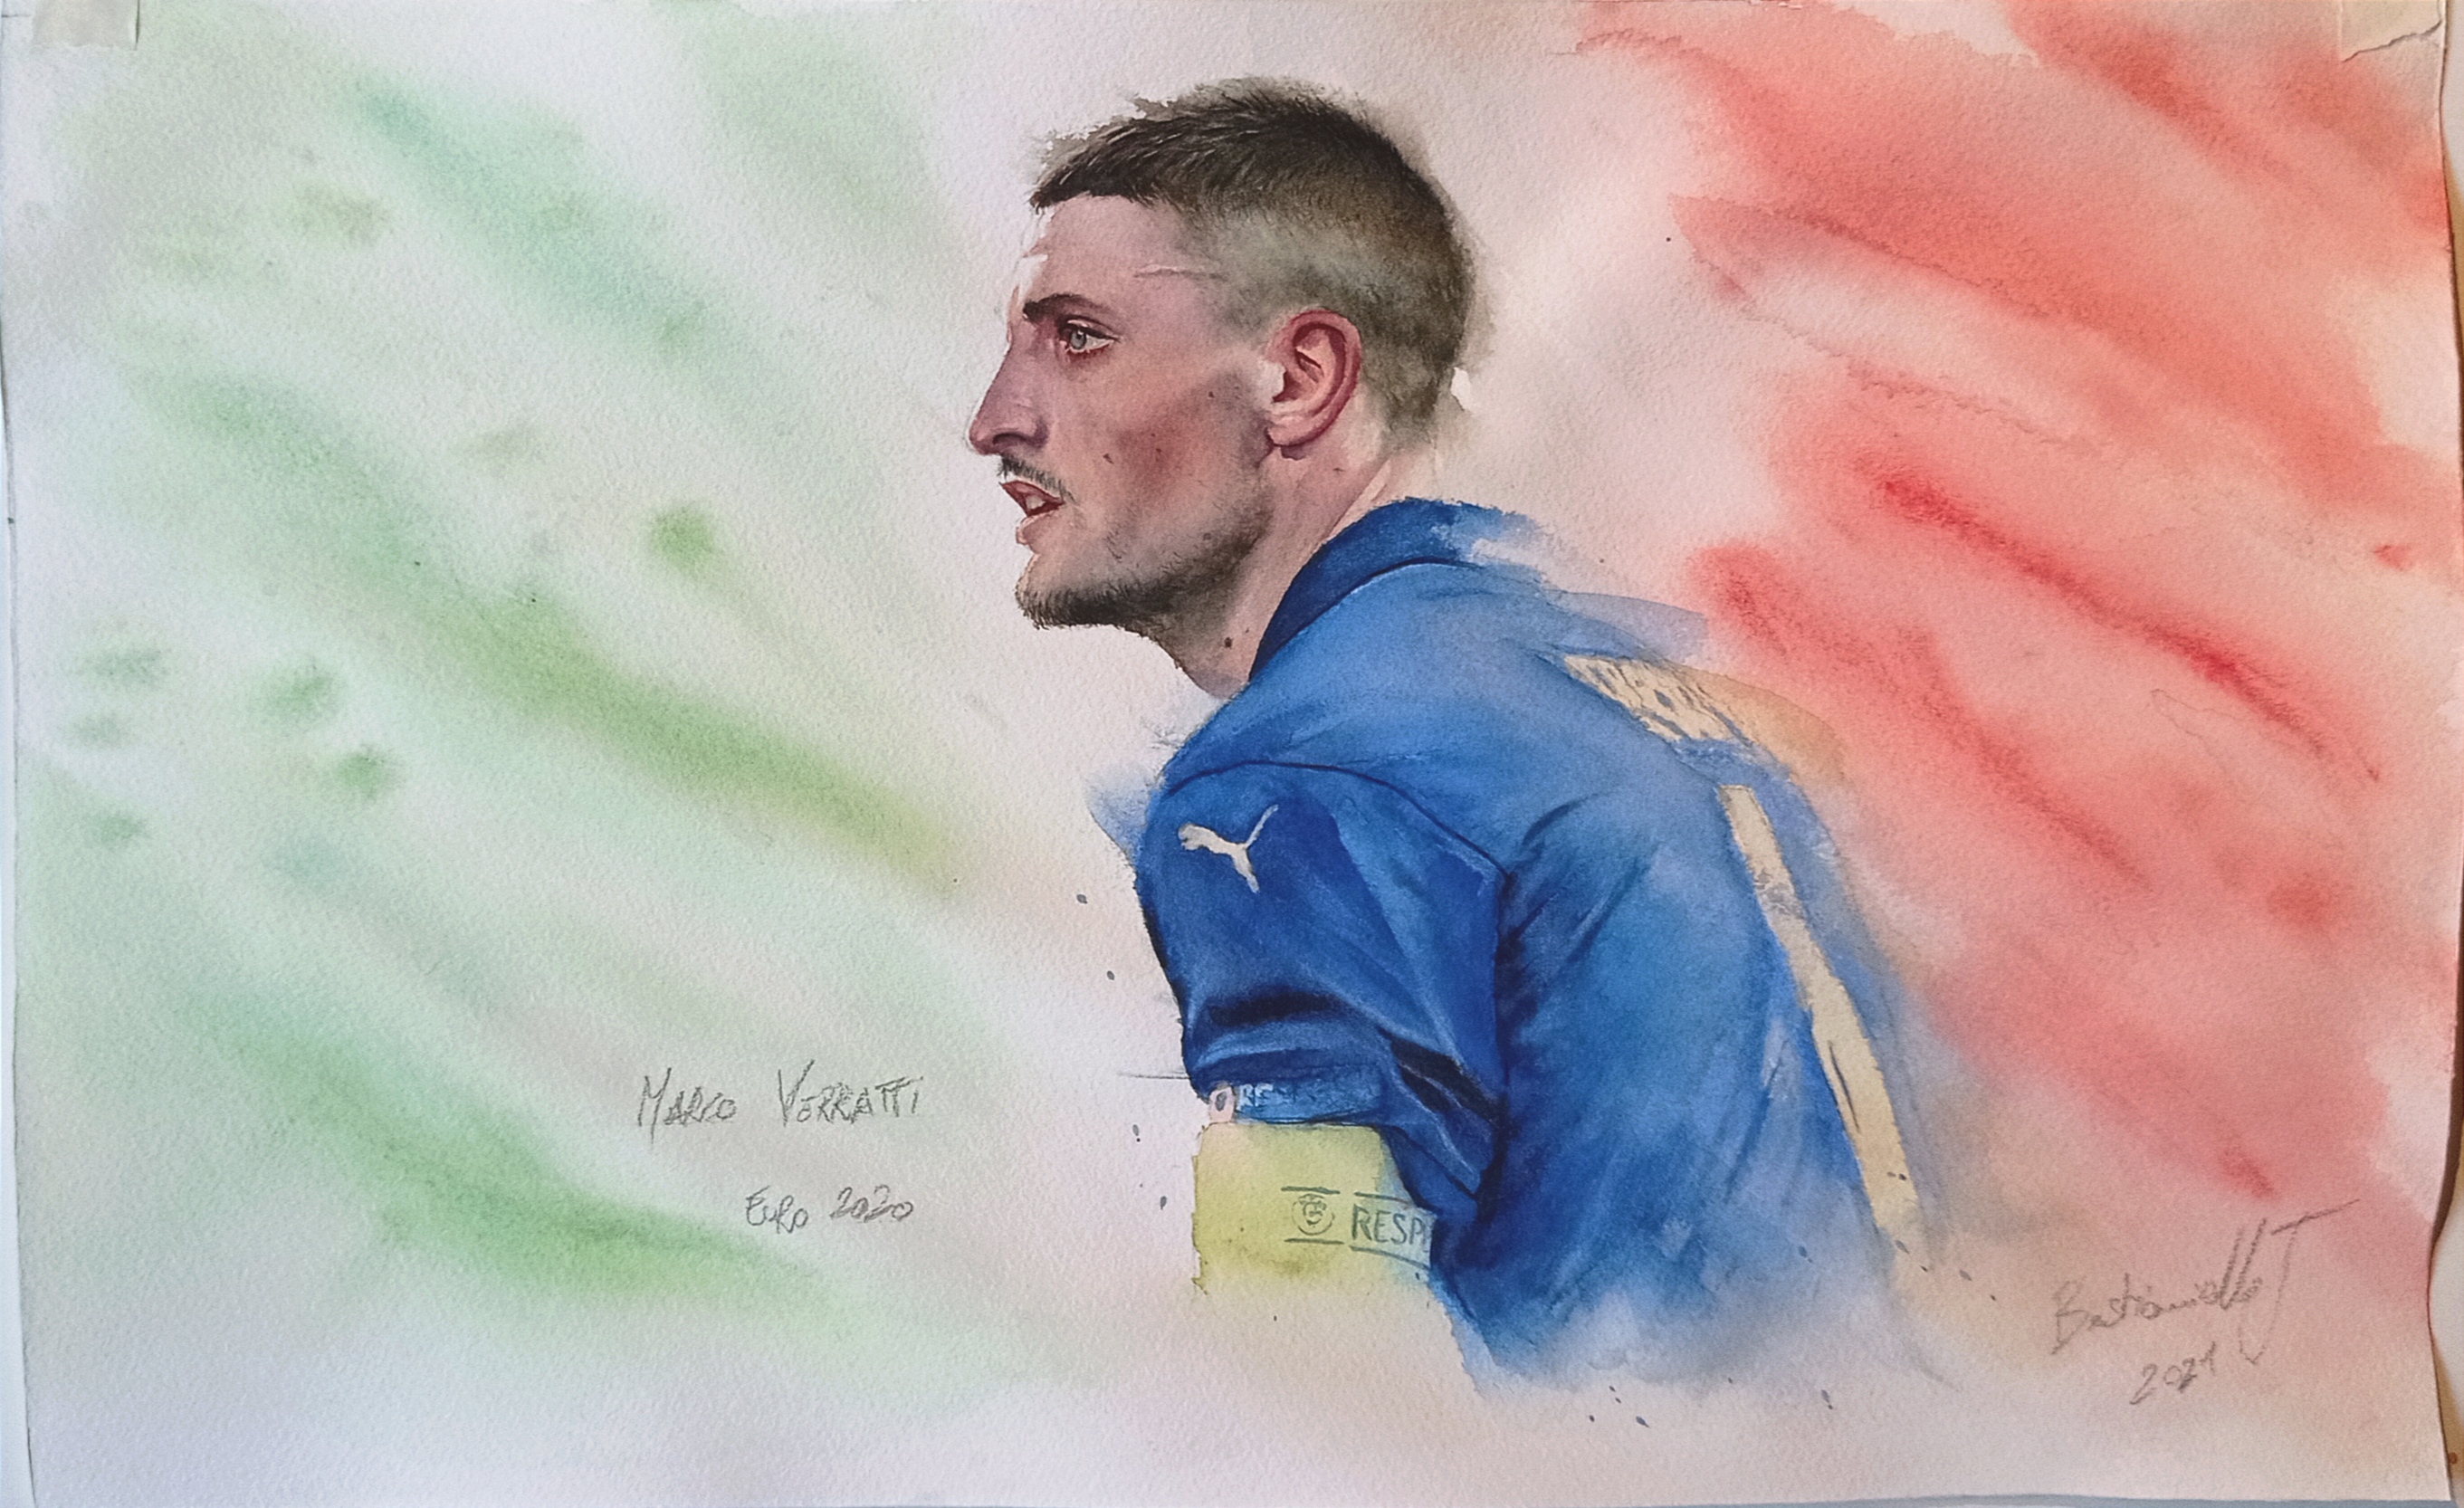 Verratti euro 2020 aquarelle dipinto acquerello watercolor portrait football italy